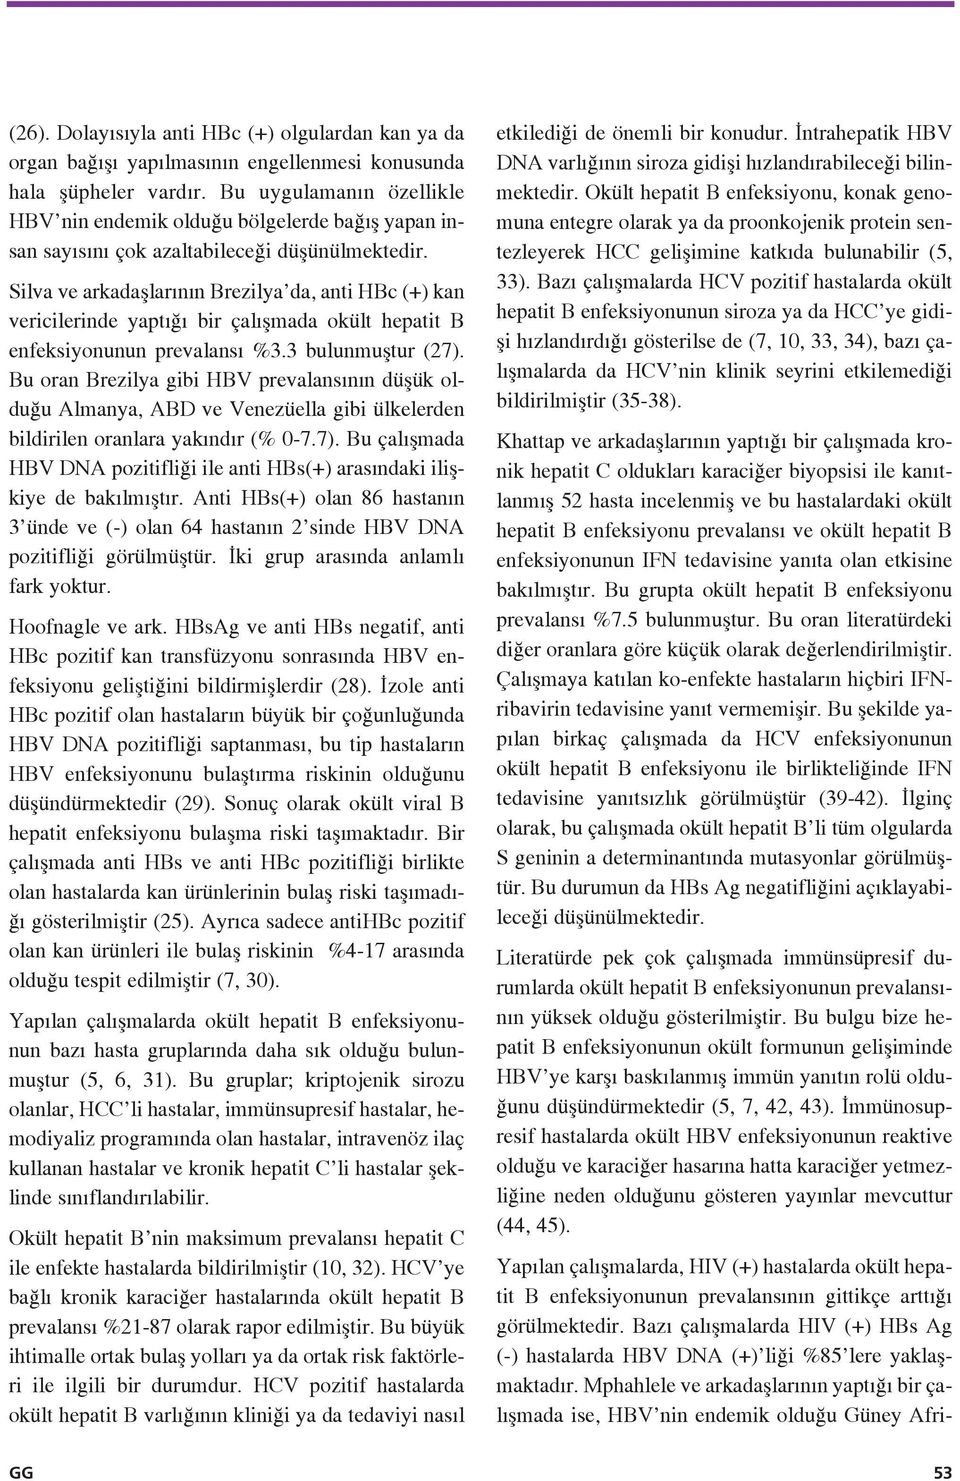 Silva ve arkadafllar n n Brezilya da, anti HBc (+) kan vericilerinde yapt bir çal flmada okült hepatit B enfeksiyonunun prevalans %3.3 bulunmufltur (27).